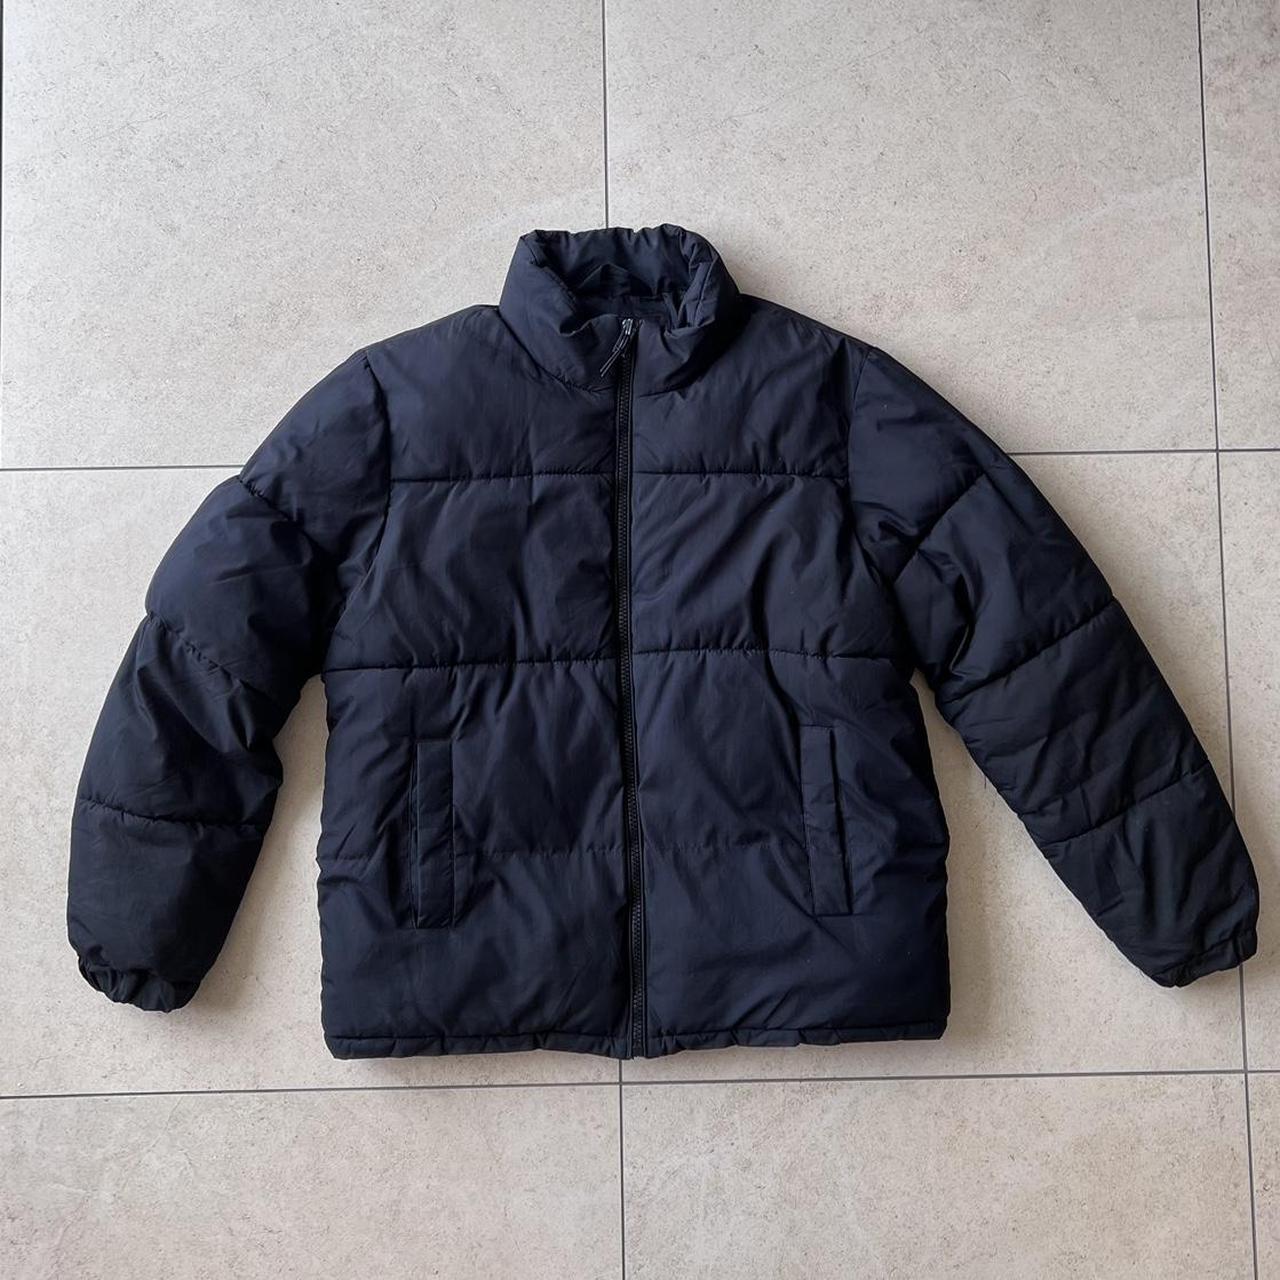 Bershka Plain Black Puffer Coat / Jacket Perfect... - Depop